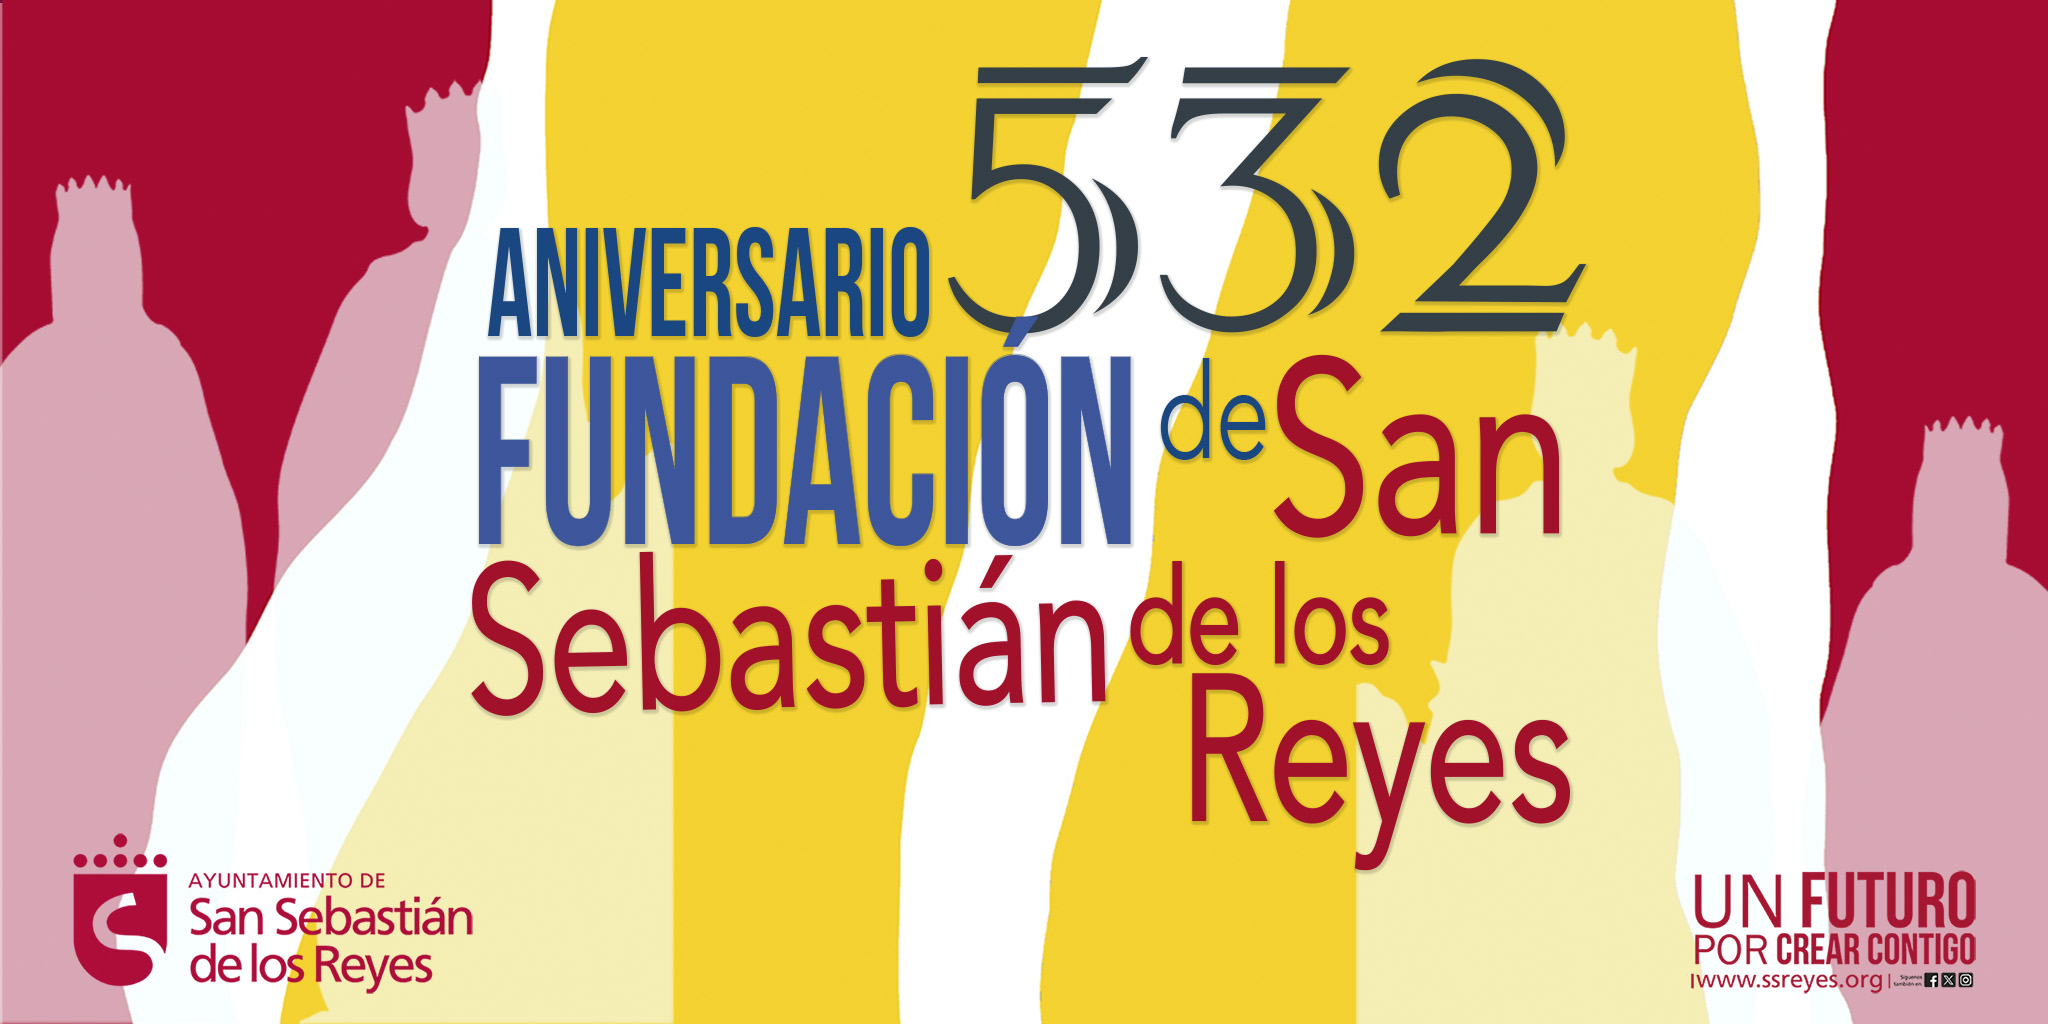 Arte, cultura y gastronomía 332 Fundación San Sebastián de los Reyes